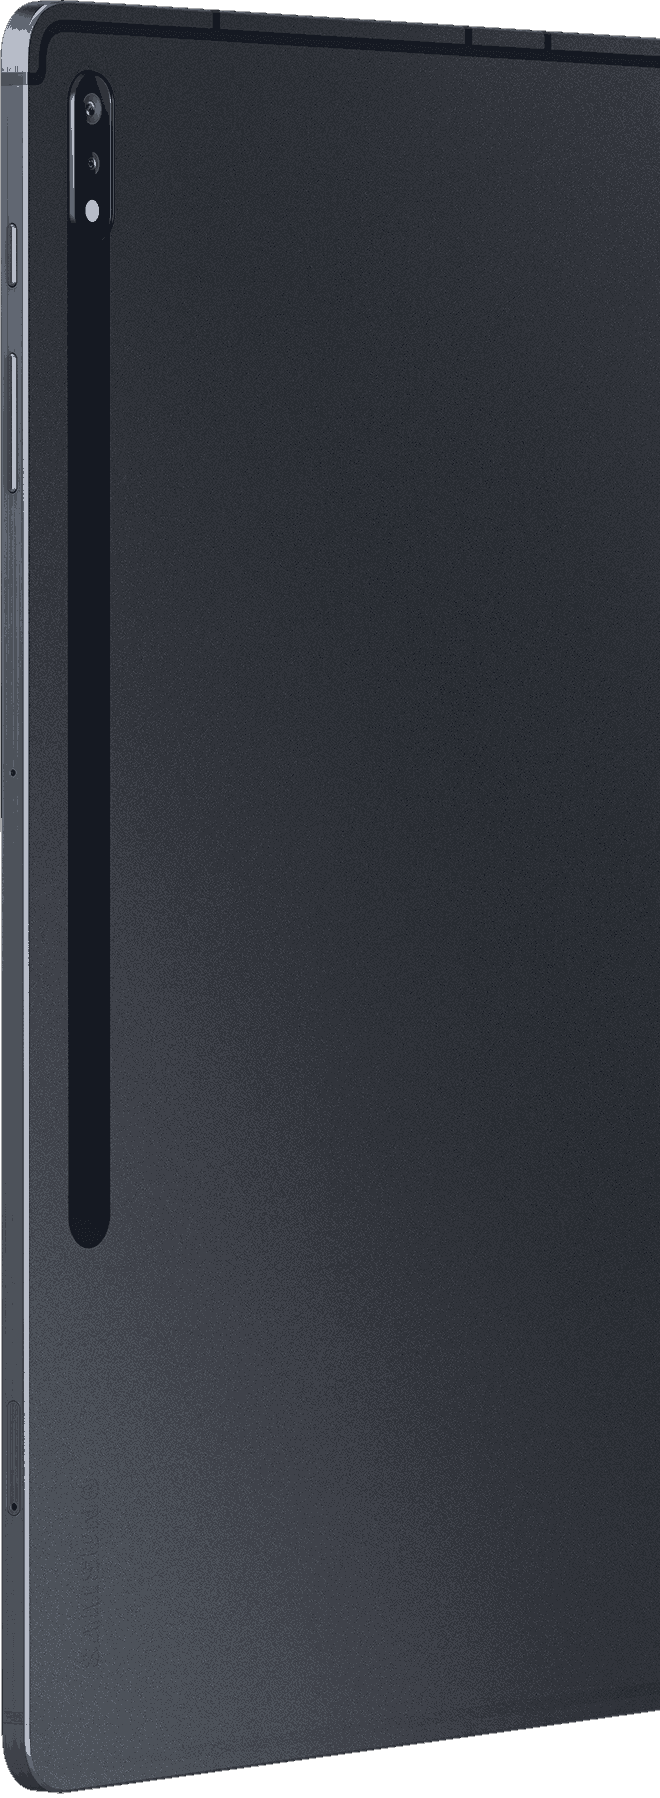 Вид сзади на планшет Galaxy Tab S7+ в цвете Mystic Black